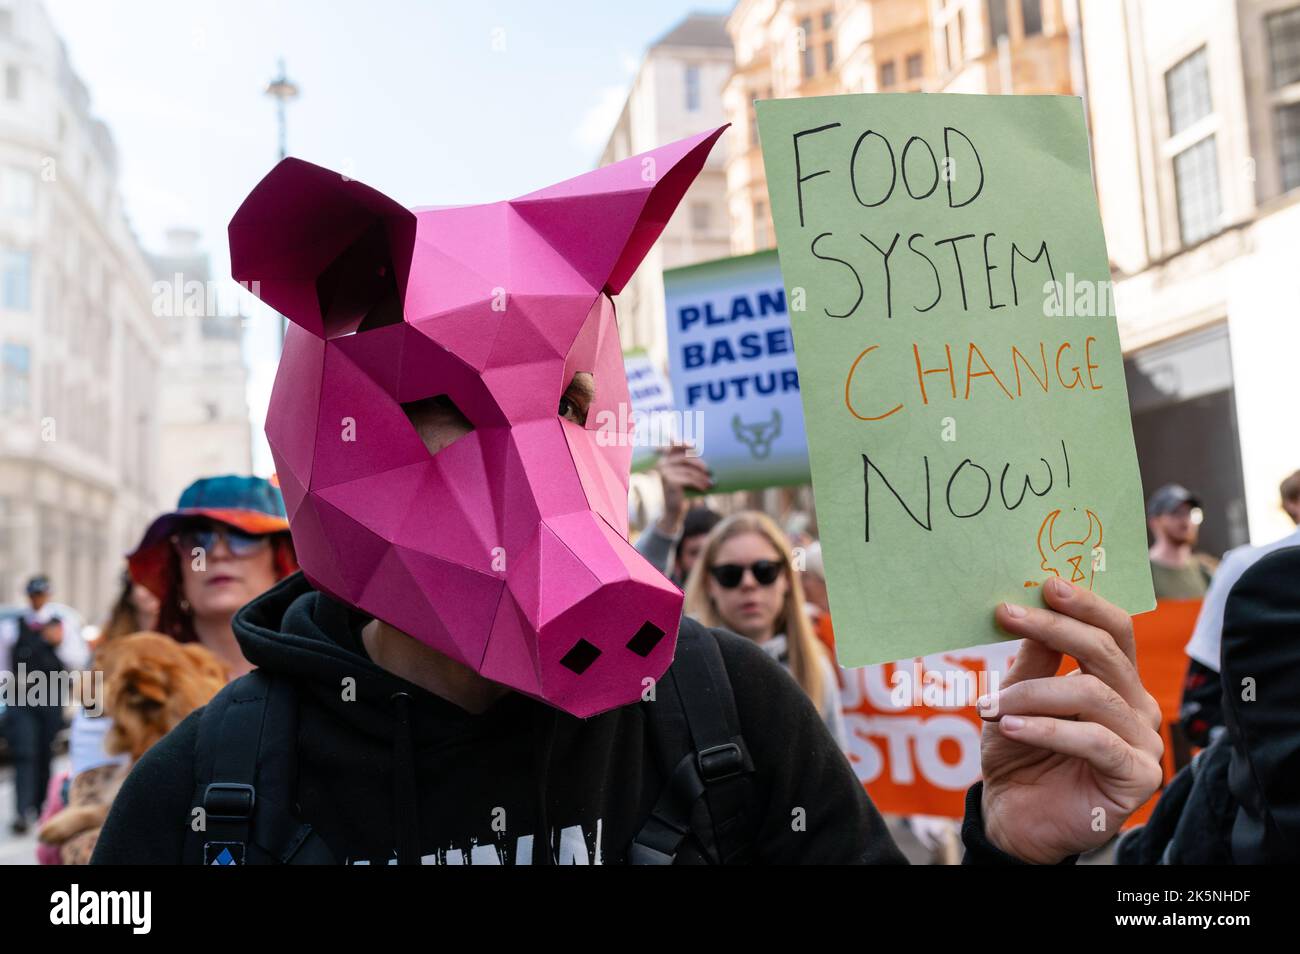 Londra, Regno Unito. 8 ottobre 2022. La ribellione degli animali marcia per chiedere una transizione al sistema alimentare basato sulle piante Foto Stock